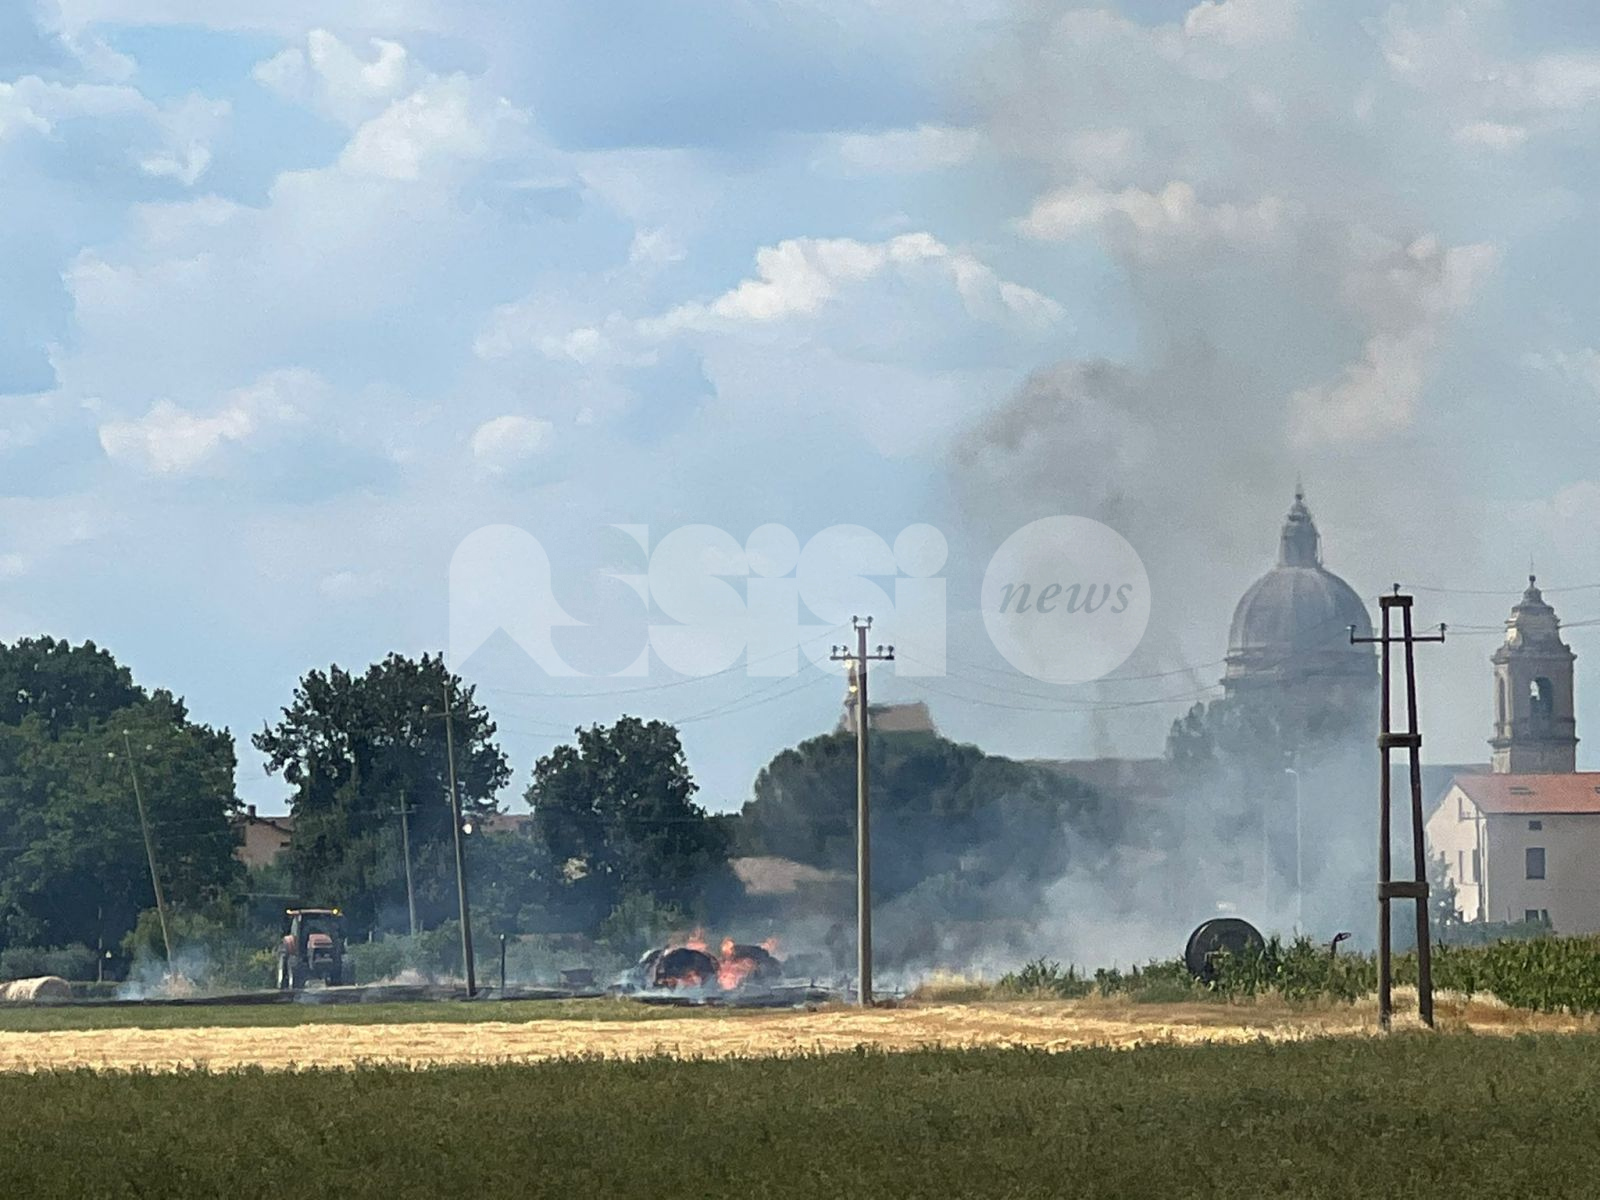 Incendio tra Santa Maria e Castelnuovo, a fuoco campo già falciato (foto e video)